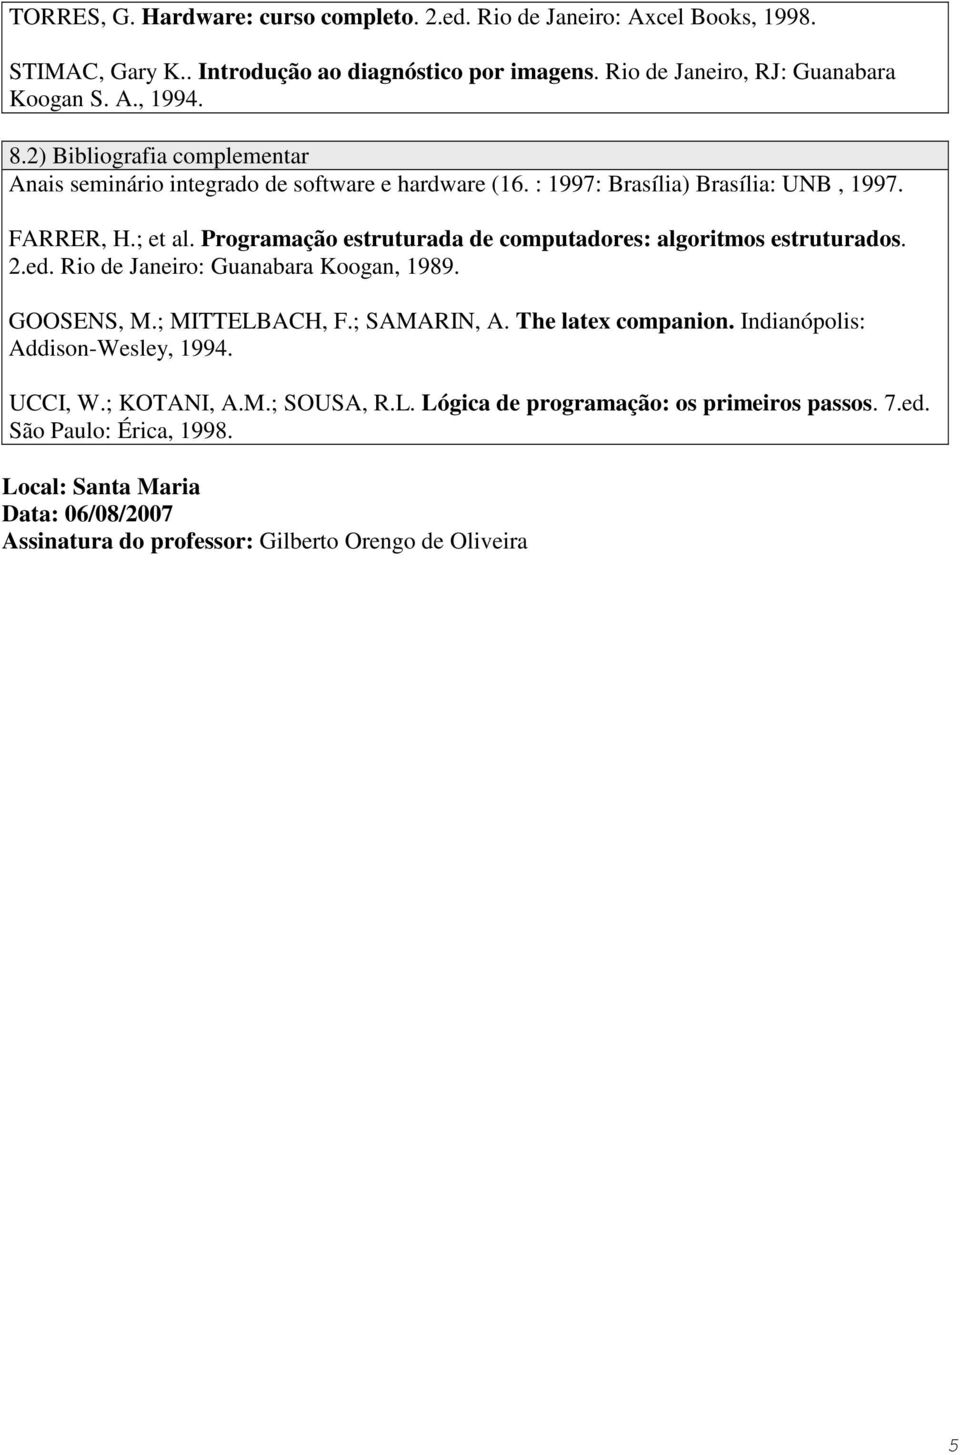 Programação estruturada de computadores: algoritmos estruturados. 2.ed. Rio de Janeiro: Guanabara Koogan, 1989. GOOSENS, M.; MITTELBACH, F.; SAMARIN, A. The latex companion.